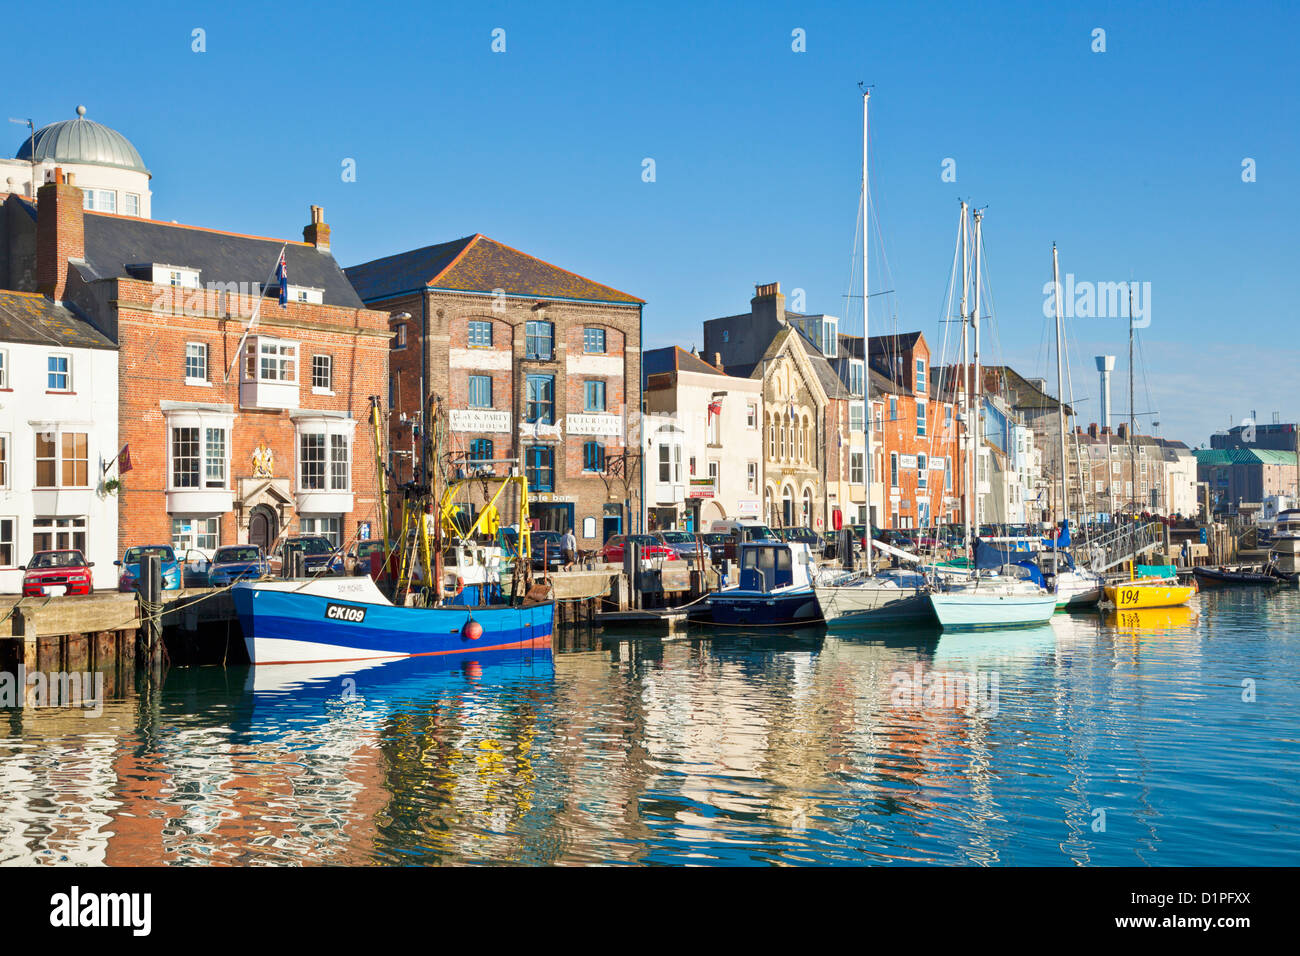 Des bateaux de pêche, chalutiers et yachts amarrés à Custom House Quay Weymouth Dorset England UK GB EU Europe Banque D'Images